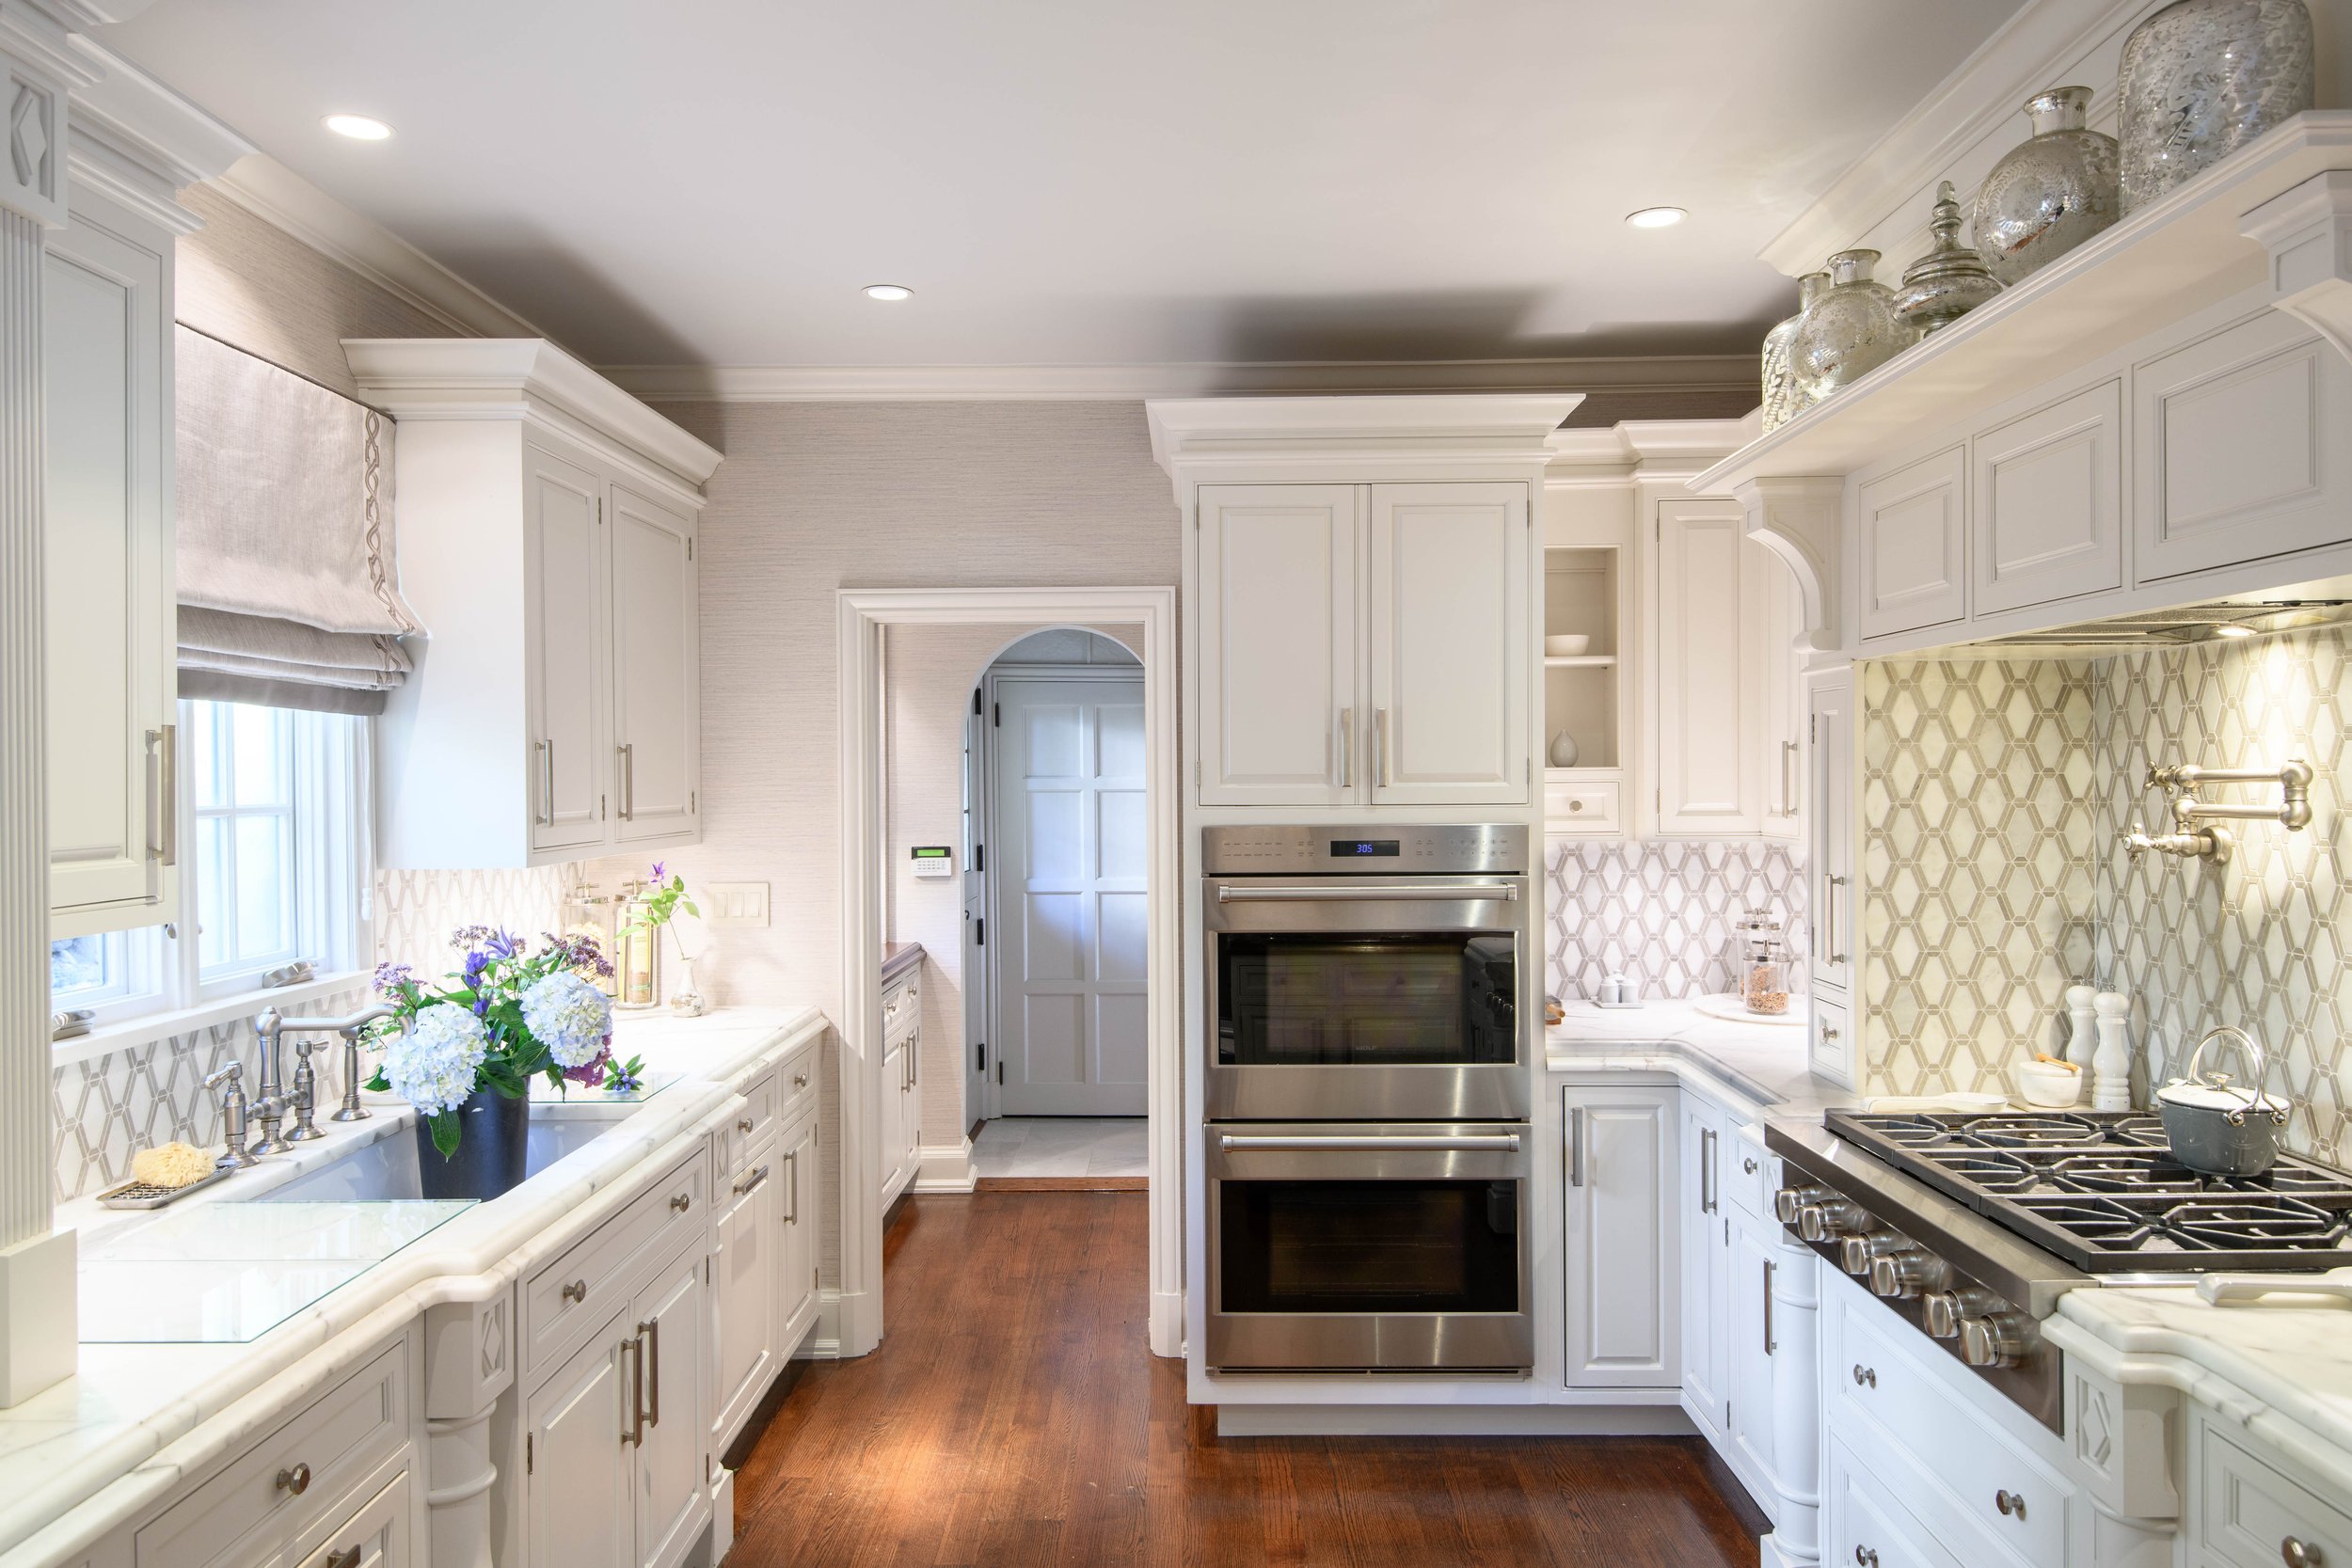 15-white-kitchen-chic-backsplash-open-westechester-rinfret-interior-designs.jpg